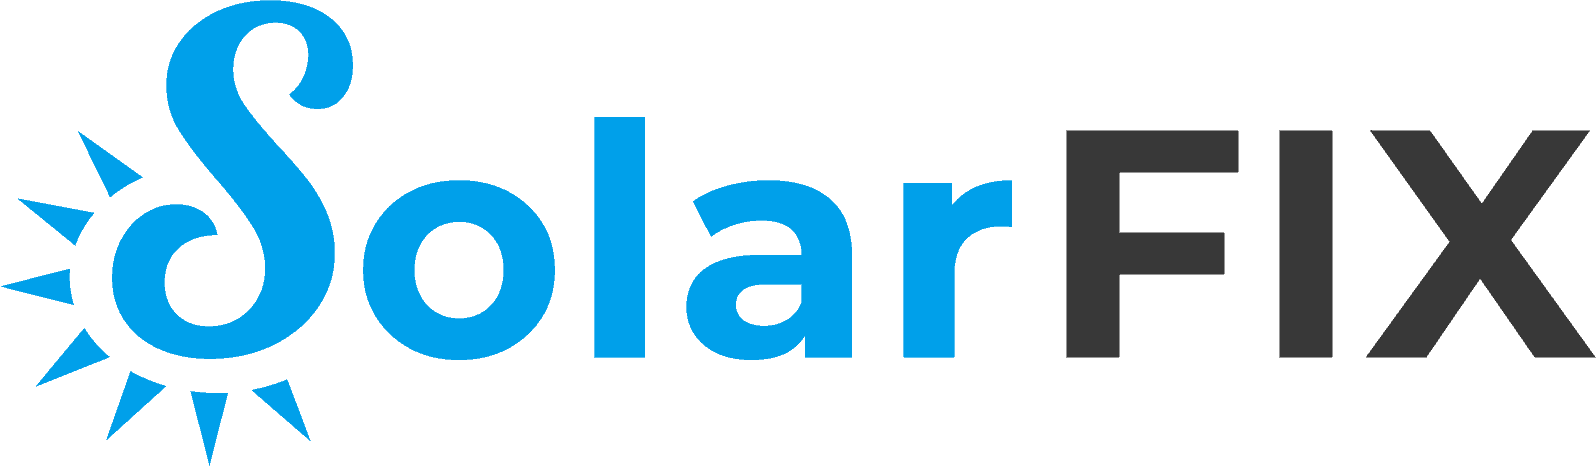 Solar FIX logo